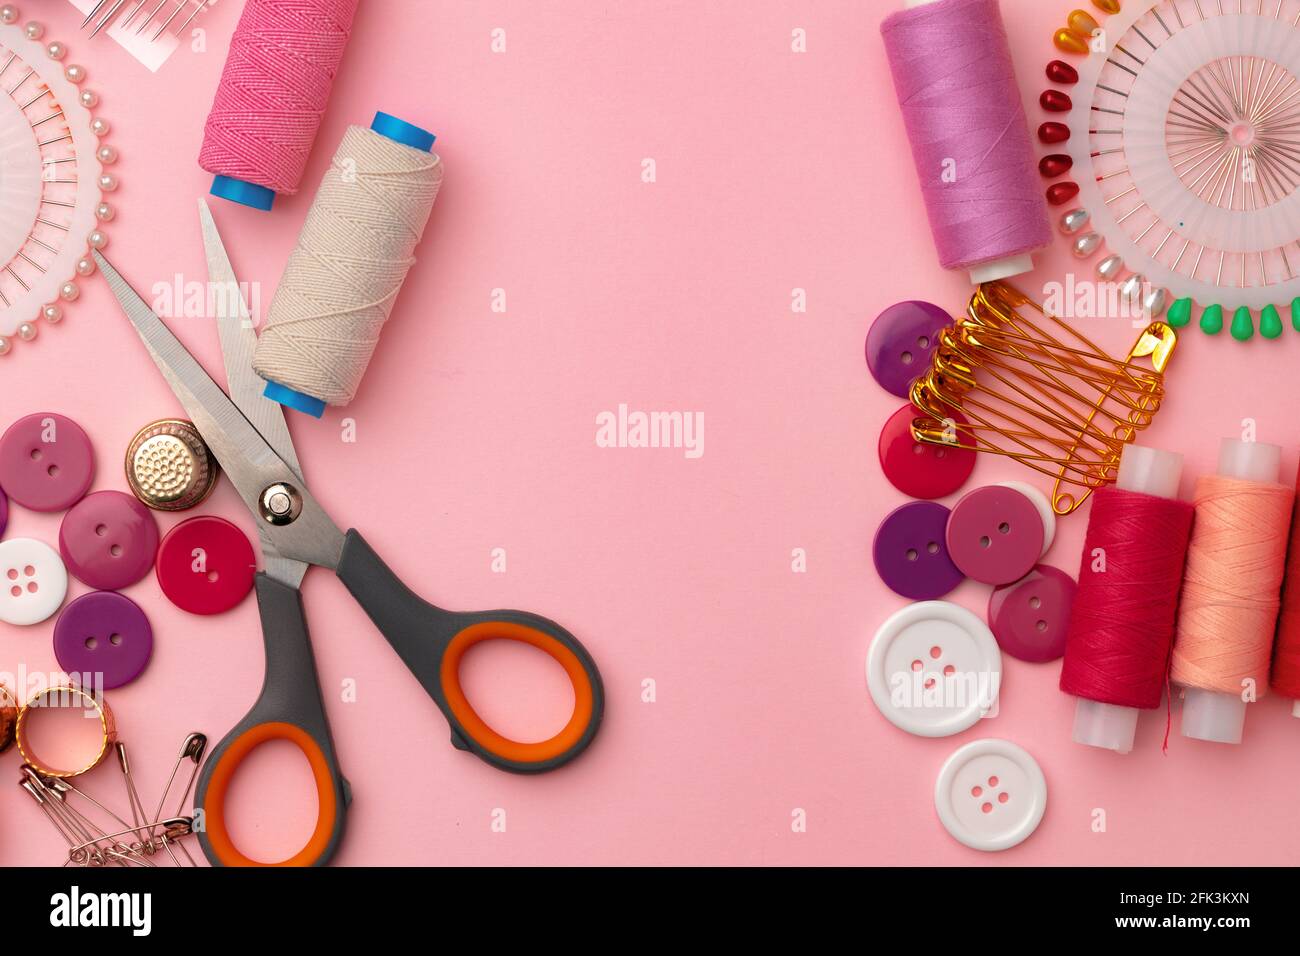 Accesorios de costura incluyendo bobinas de hilo y pins sobre fondo rosa Foto de stock